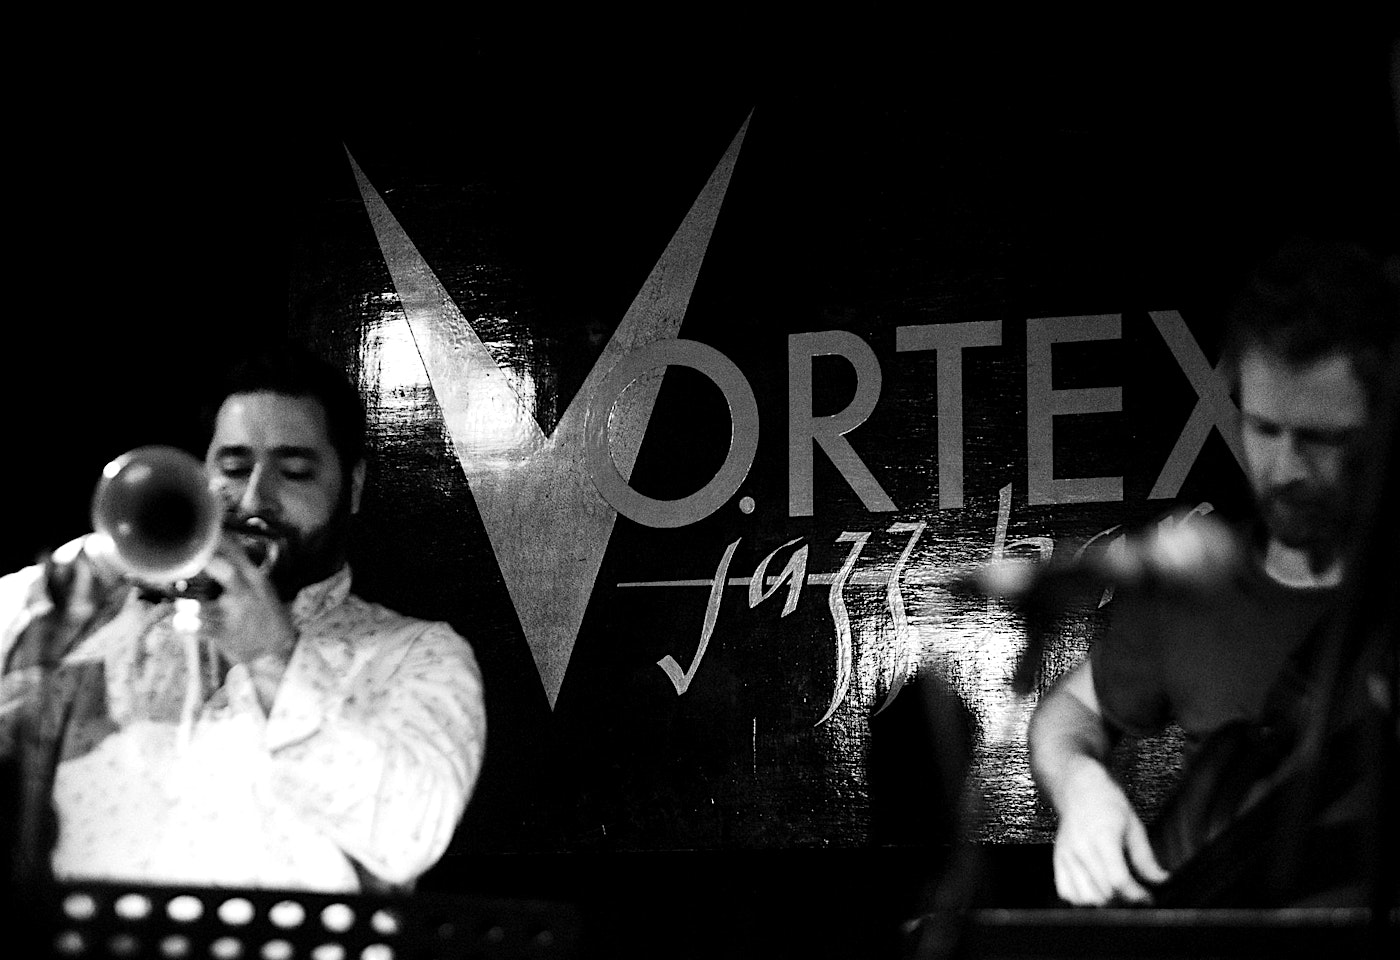 vortex jazz club shoreditch